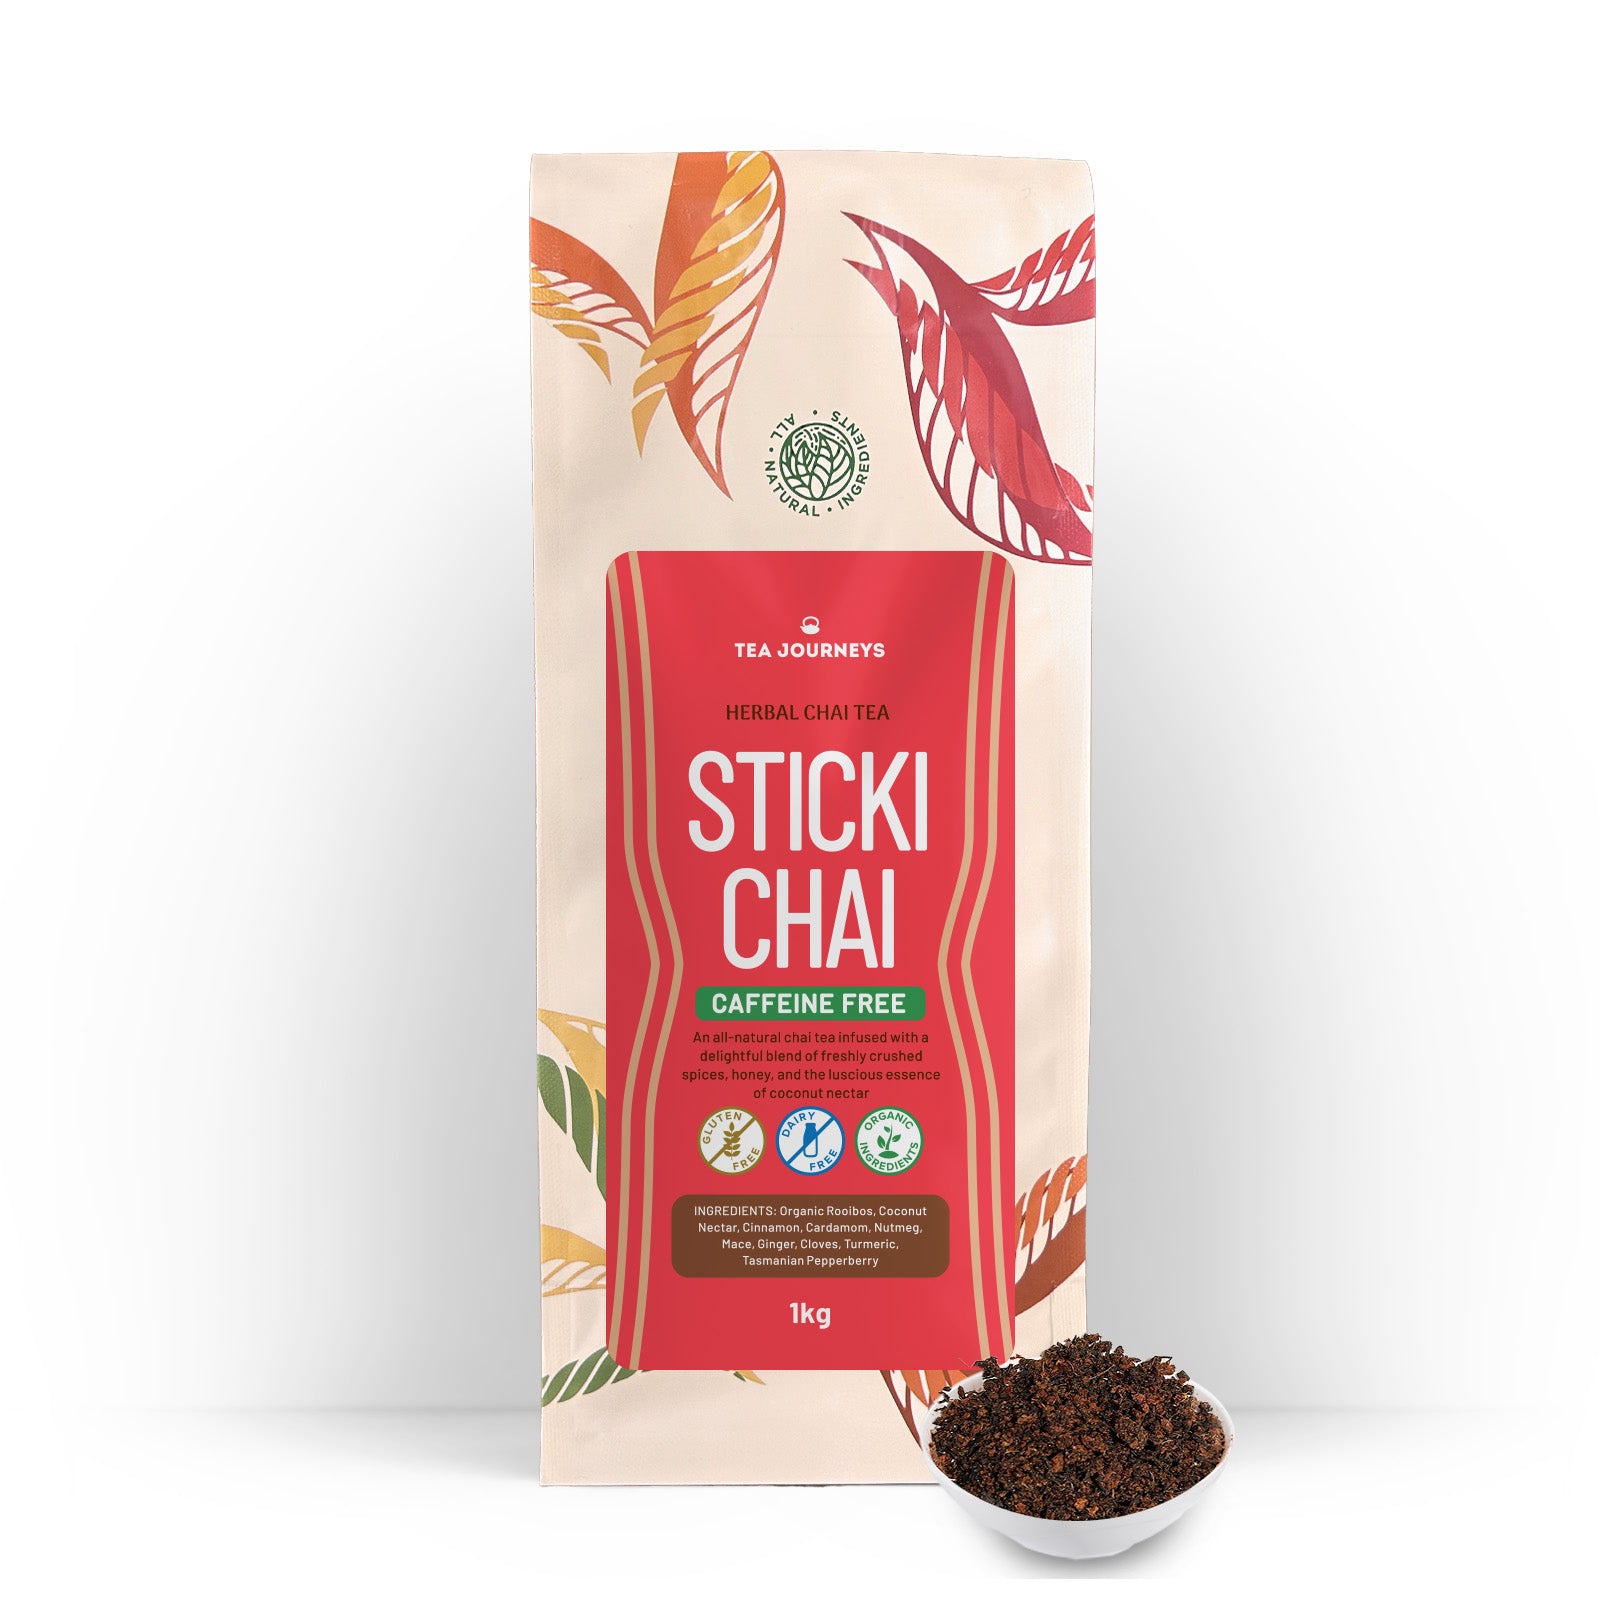 Herbal Stickichai - All-natural Chai Tea